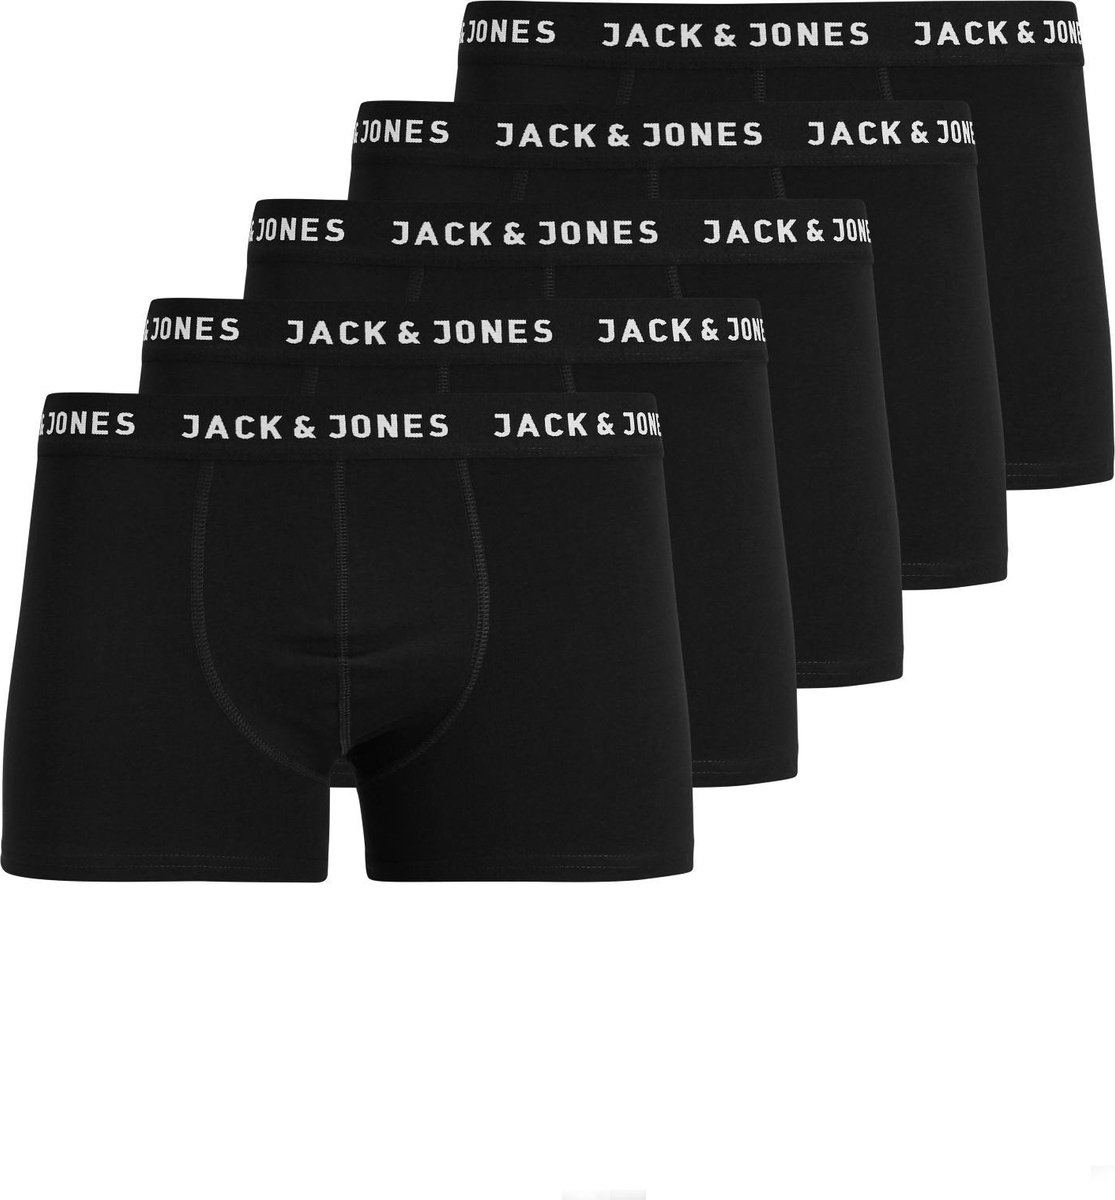 JACK&JONES JACHUEY TRUNKS 5 PACK NOOS Heren Onderbroek - Maat M - JACK & JONES